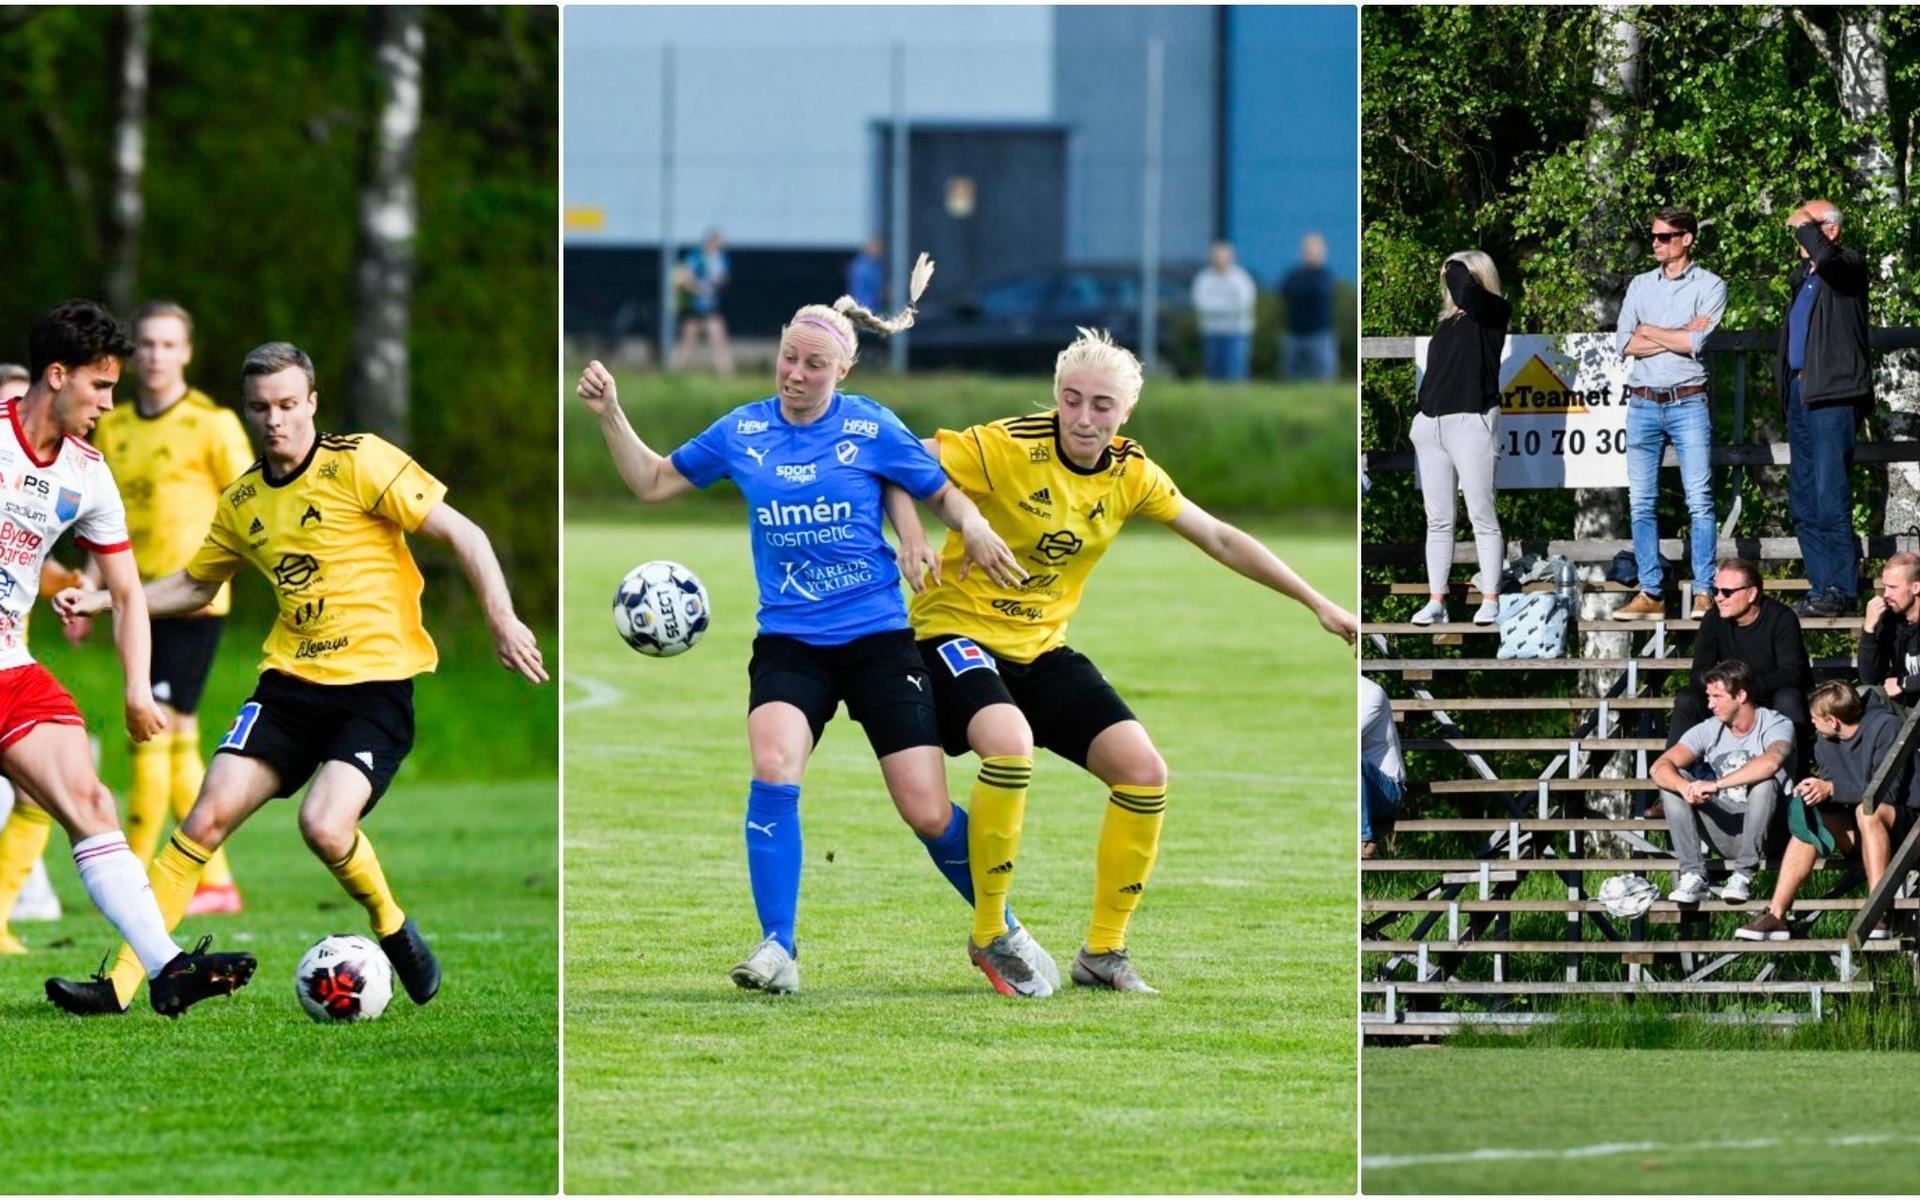 En ny säsong är en ny möjlighet att drömma stort och sikta högt, skriver HP:s sportchef Fredrik Jonsson inför fotbollsstarten.